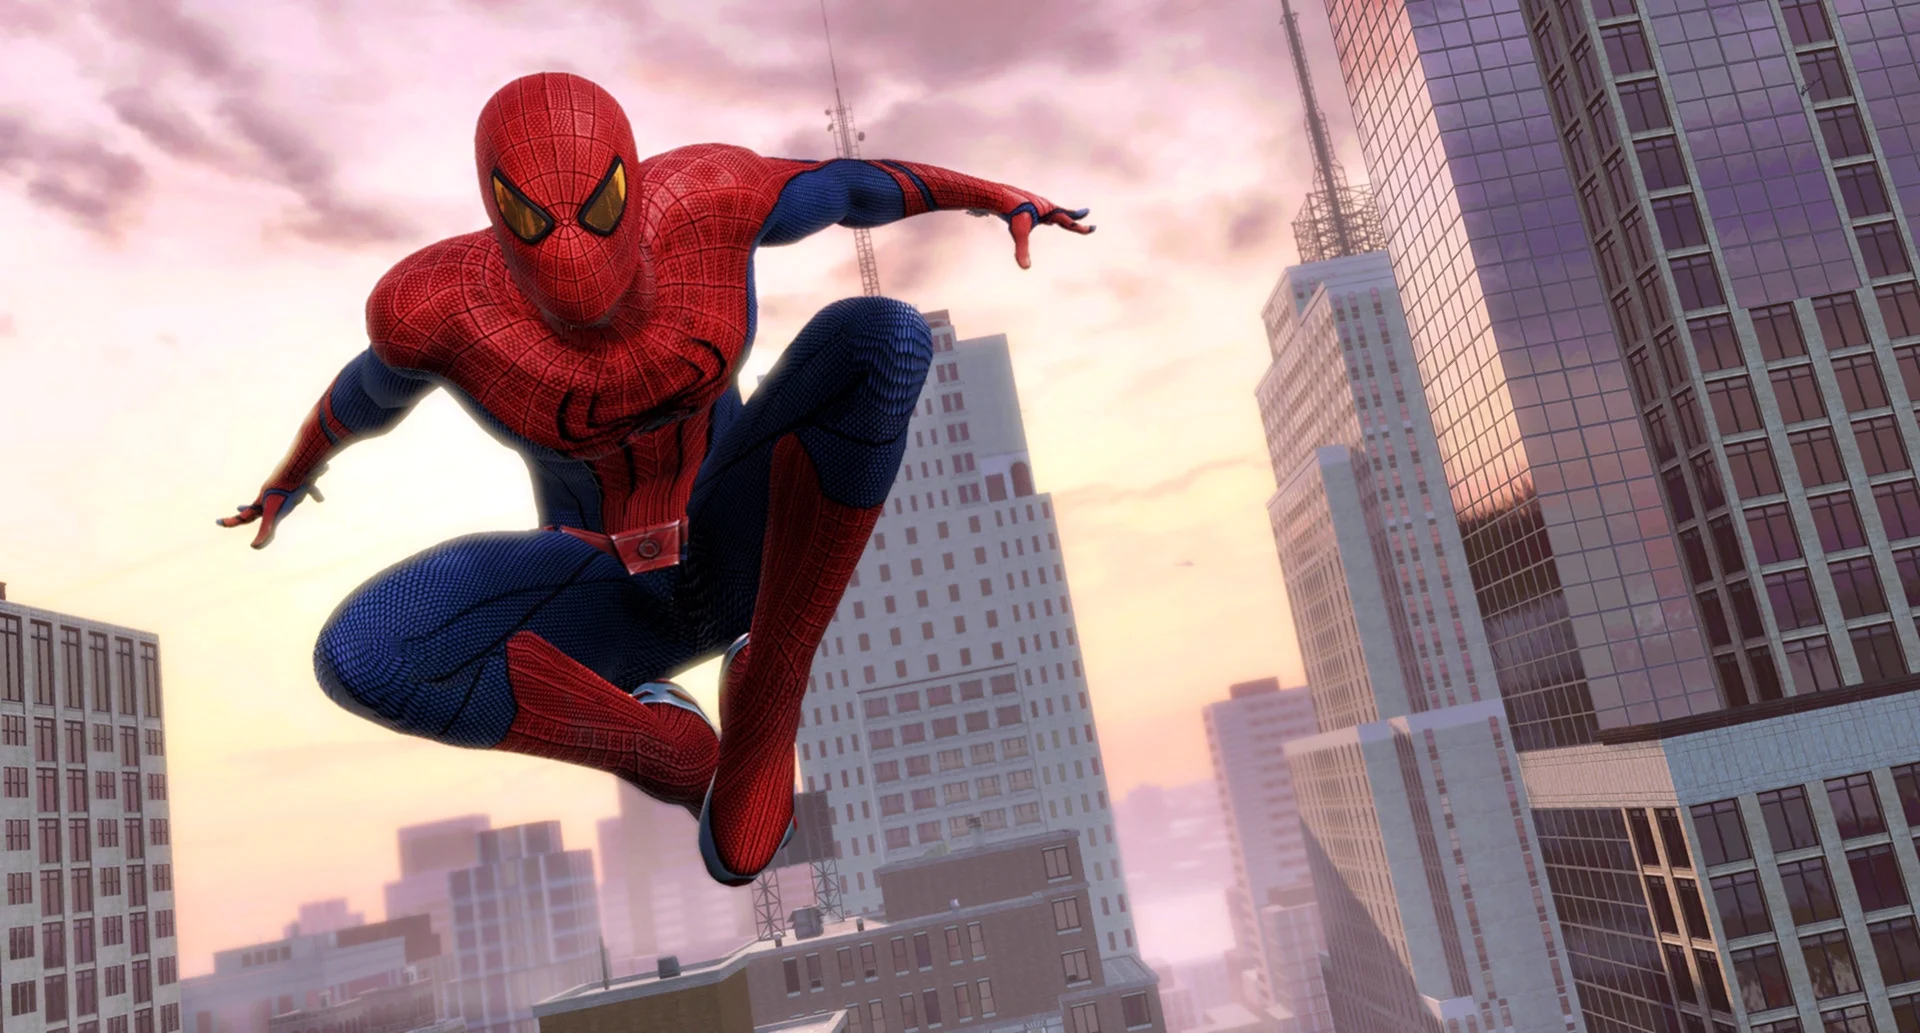 The amazing Spider-man игра 2012